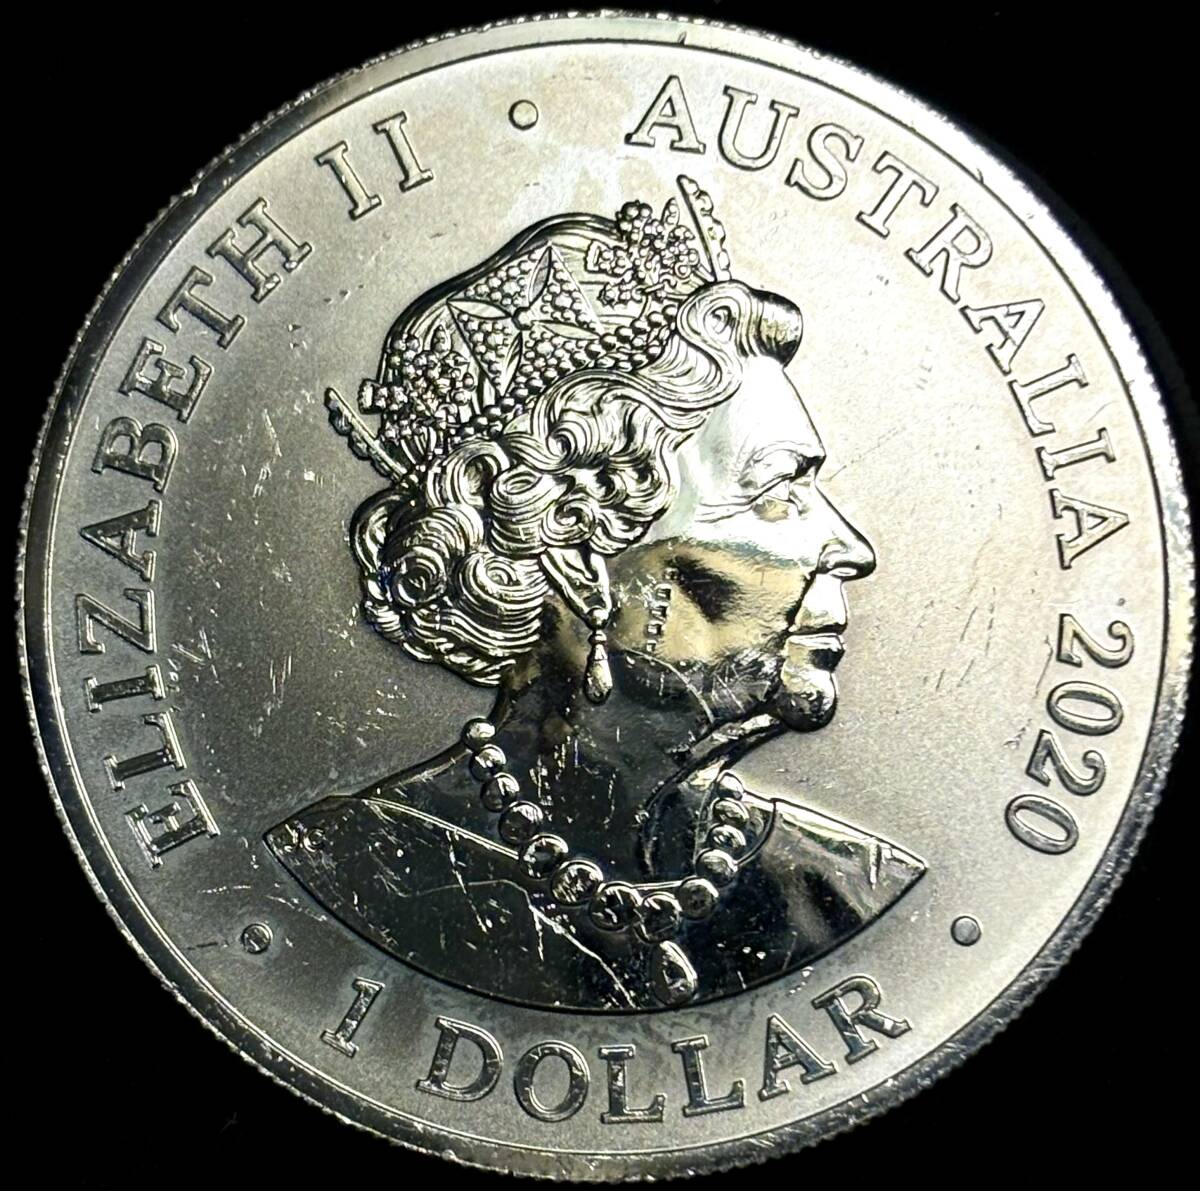 【オーストラリア大型銀貨】(1オンス純銀 2020年① 直径40mm プルーフ)_画像2